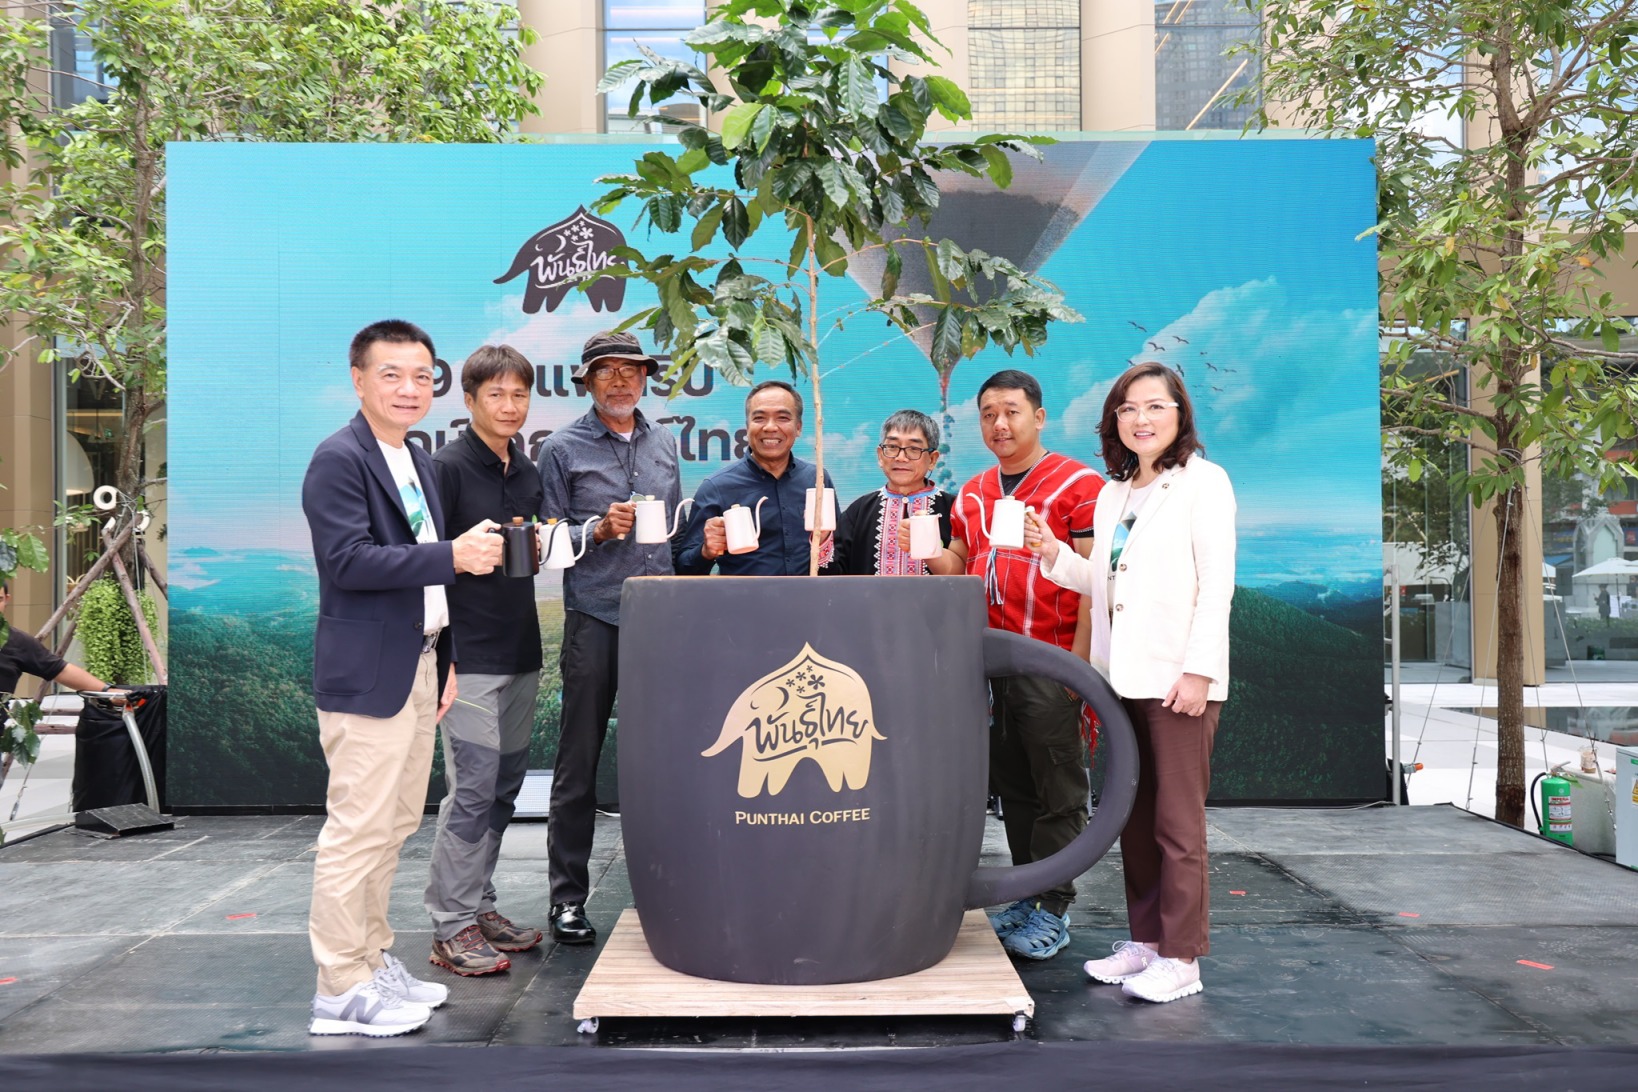 กาแฟพันธุ์ไทยรุกตลาด Home Coffee ชูความพรีเมียมรักษ์โลก​ รับเทรนด์ตลาด พร้อมเปิดตัว “9 กาแฟดริปรักษ์โลกพันธุ์ไทย” ลิมิเต็ด อิดิชัน